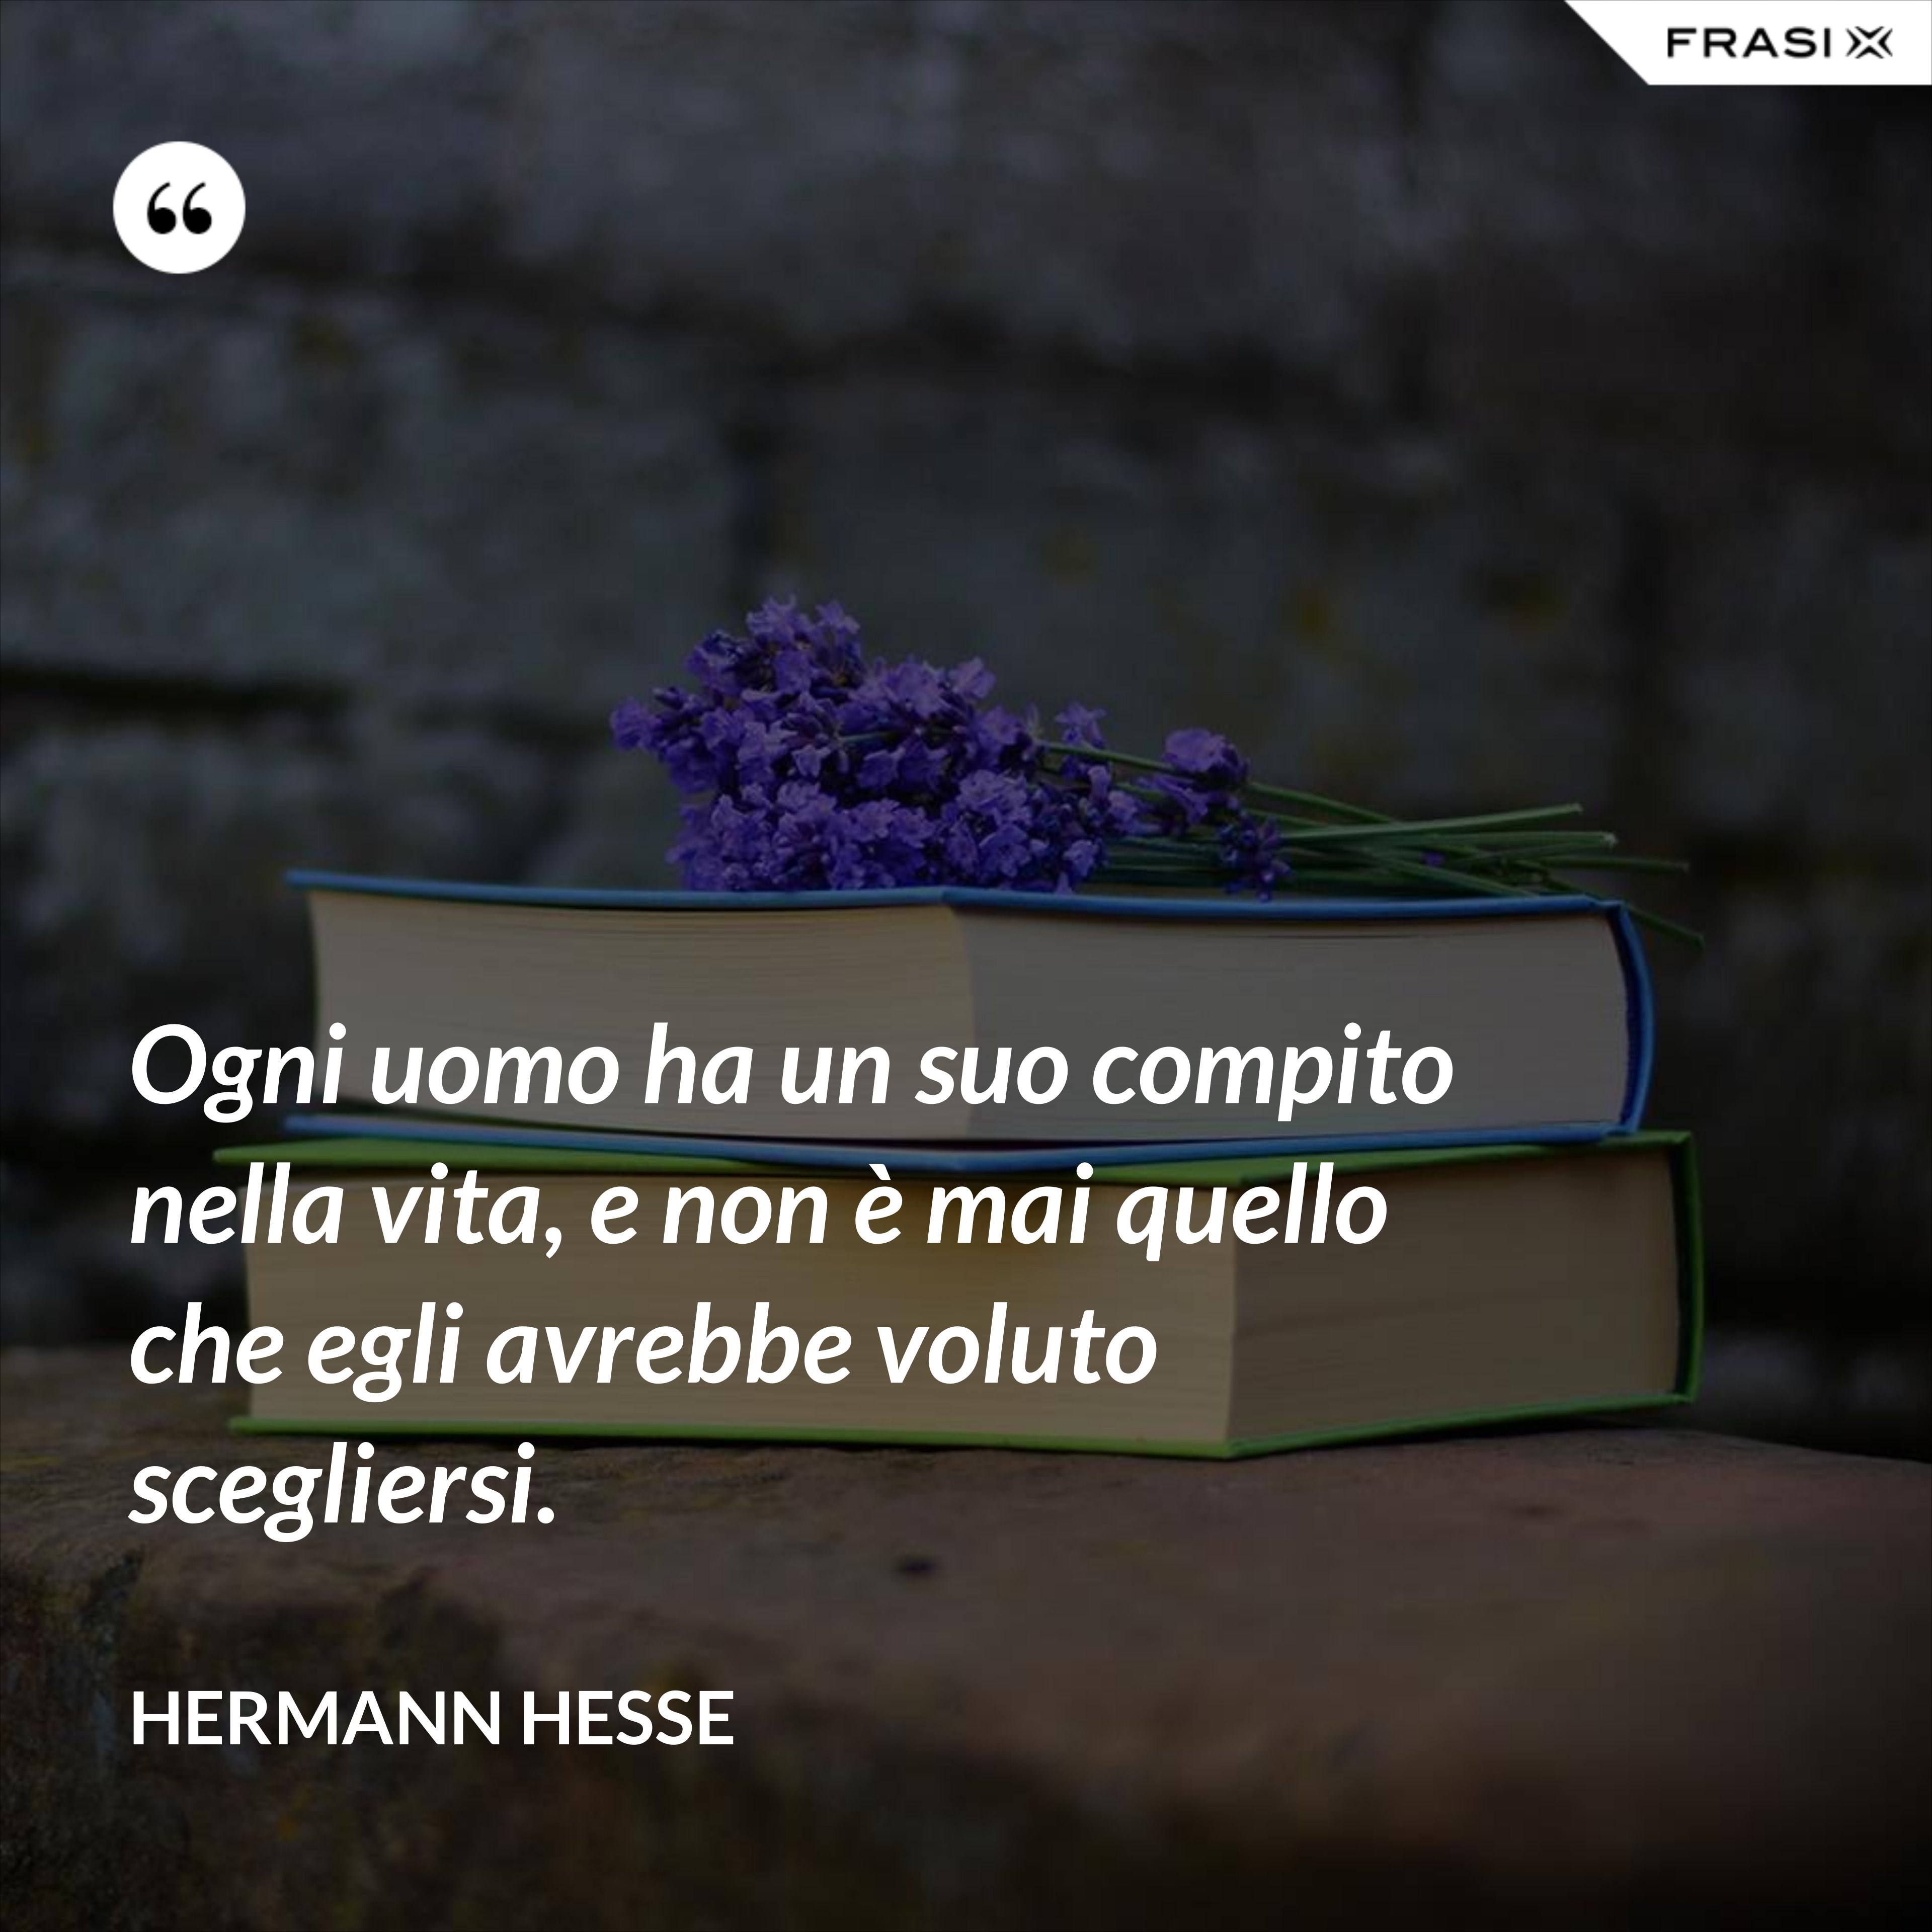 Ogni uomo ha un suo compito nella vita, e non è mai quello che egli avrebbe voluto scegliersi. - Hermann Hesse